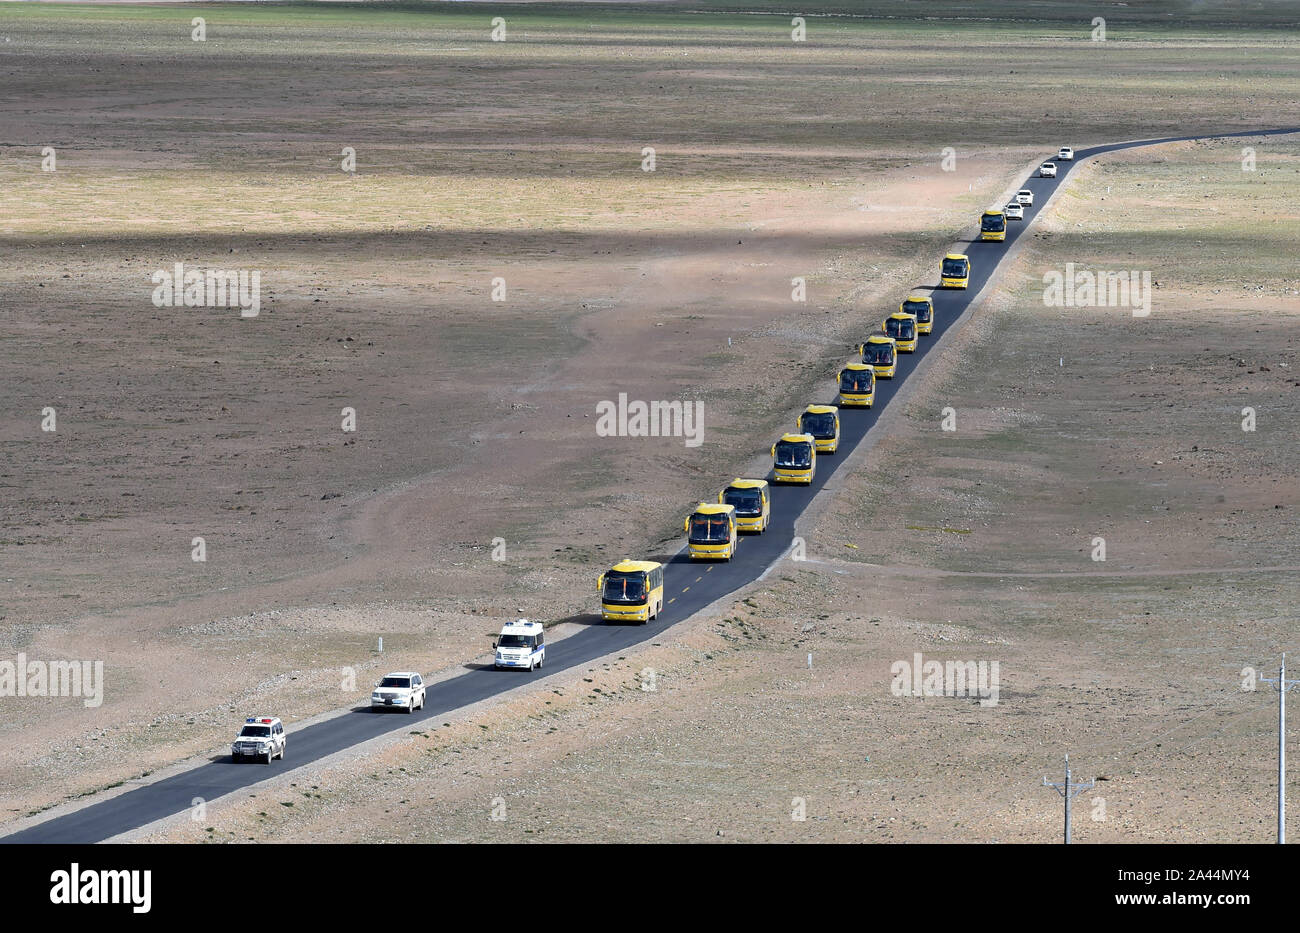 Pechino, Cina. Il 18 giugno, 2018. Foto scattata a giugno 18, 2018 mostra una flotta di veicoli sul modo per trasferire le persone da Rongma città di Nyima County di Lhasa, a sud-ovest della Cina di regione autonoma del Tibet. Credito: Chogo/Xinhua/Alamy Live News Foto Stock